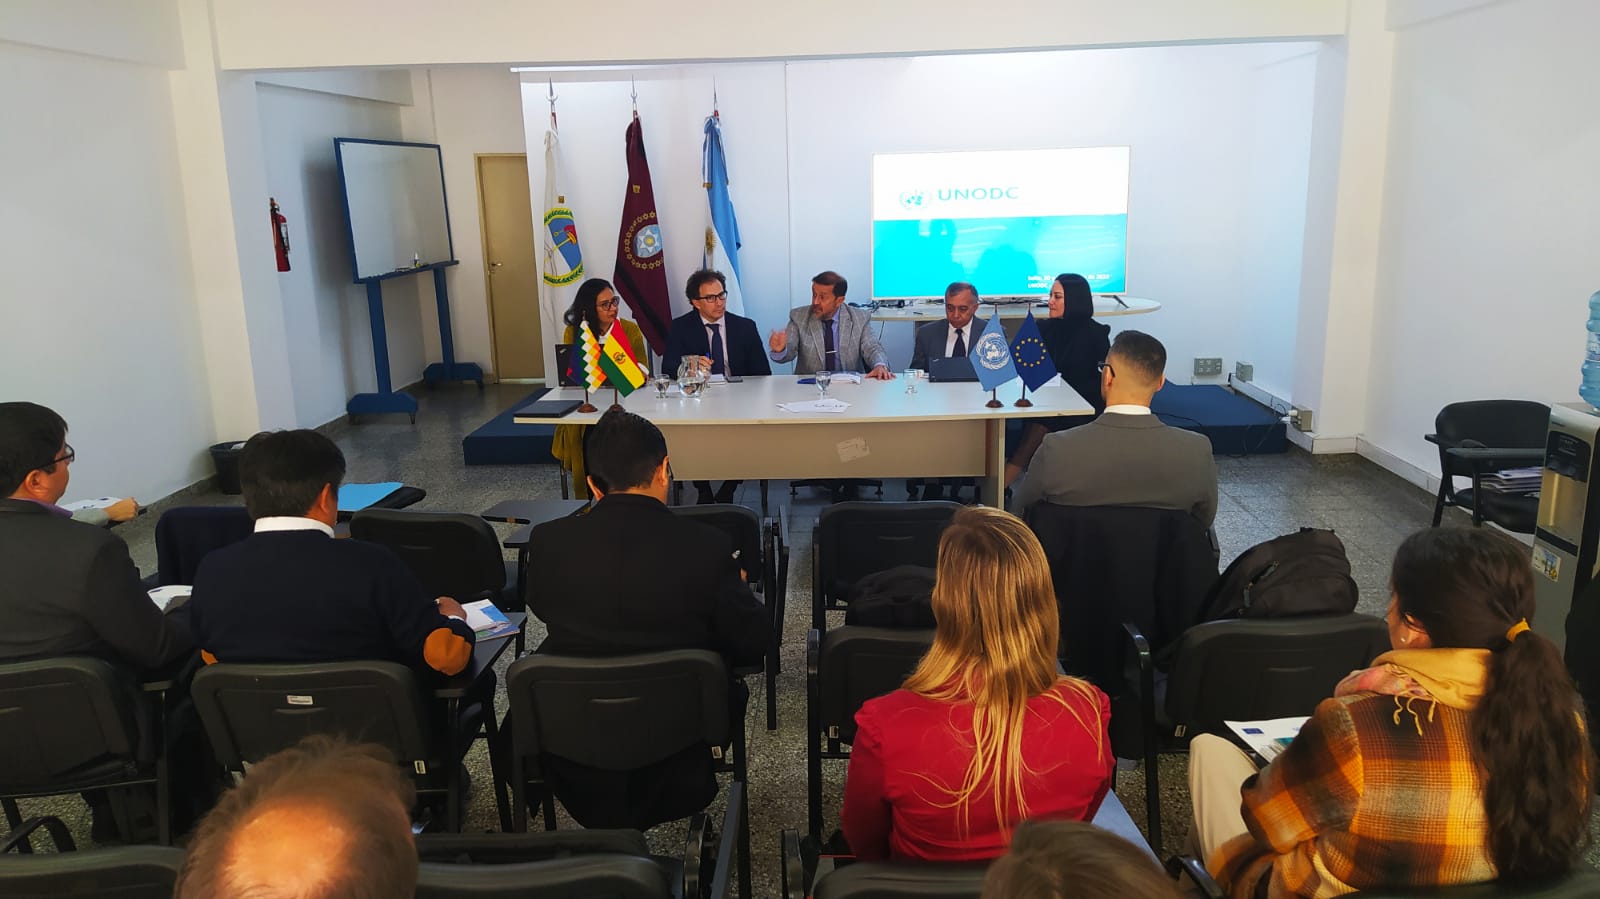 El fiscal general de la Unidad Fiscal Salta, Eduardo Villalba, expone en el centro del panel. - Foto: Sebastián Rodríguez / Ministerio Público Fiscal